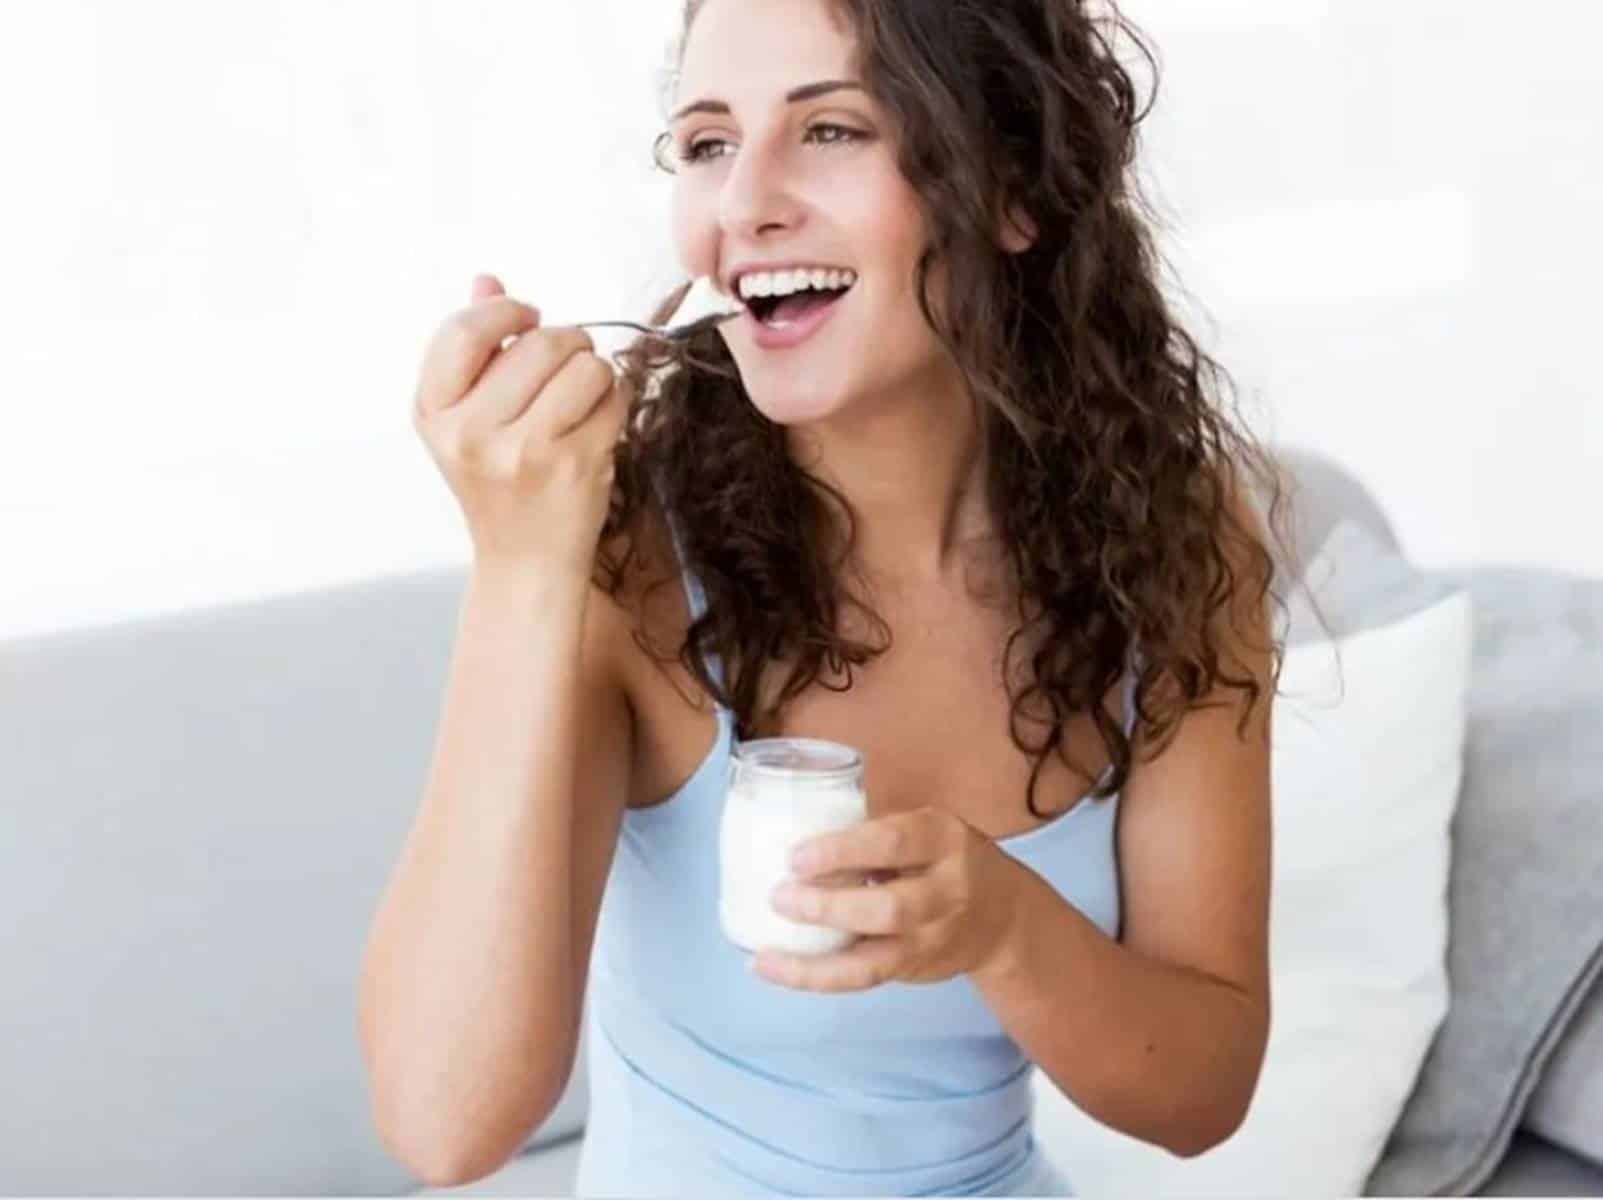 Descubra o que o iogurte pode fazer pela sua saúde e beleza